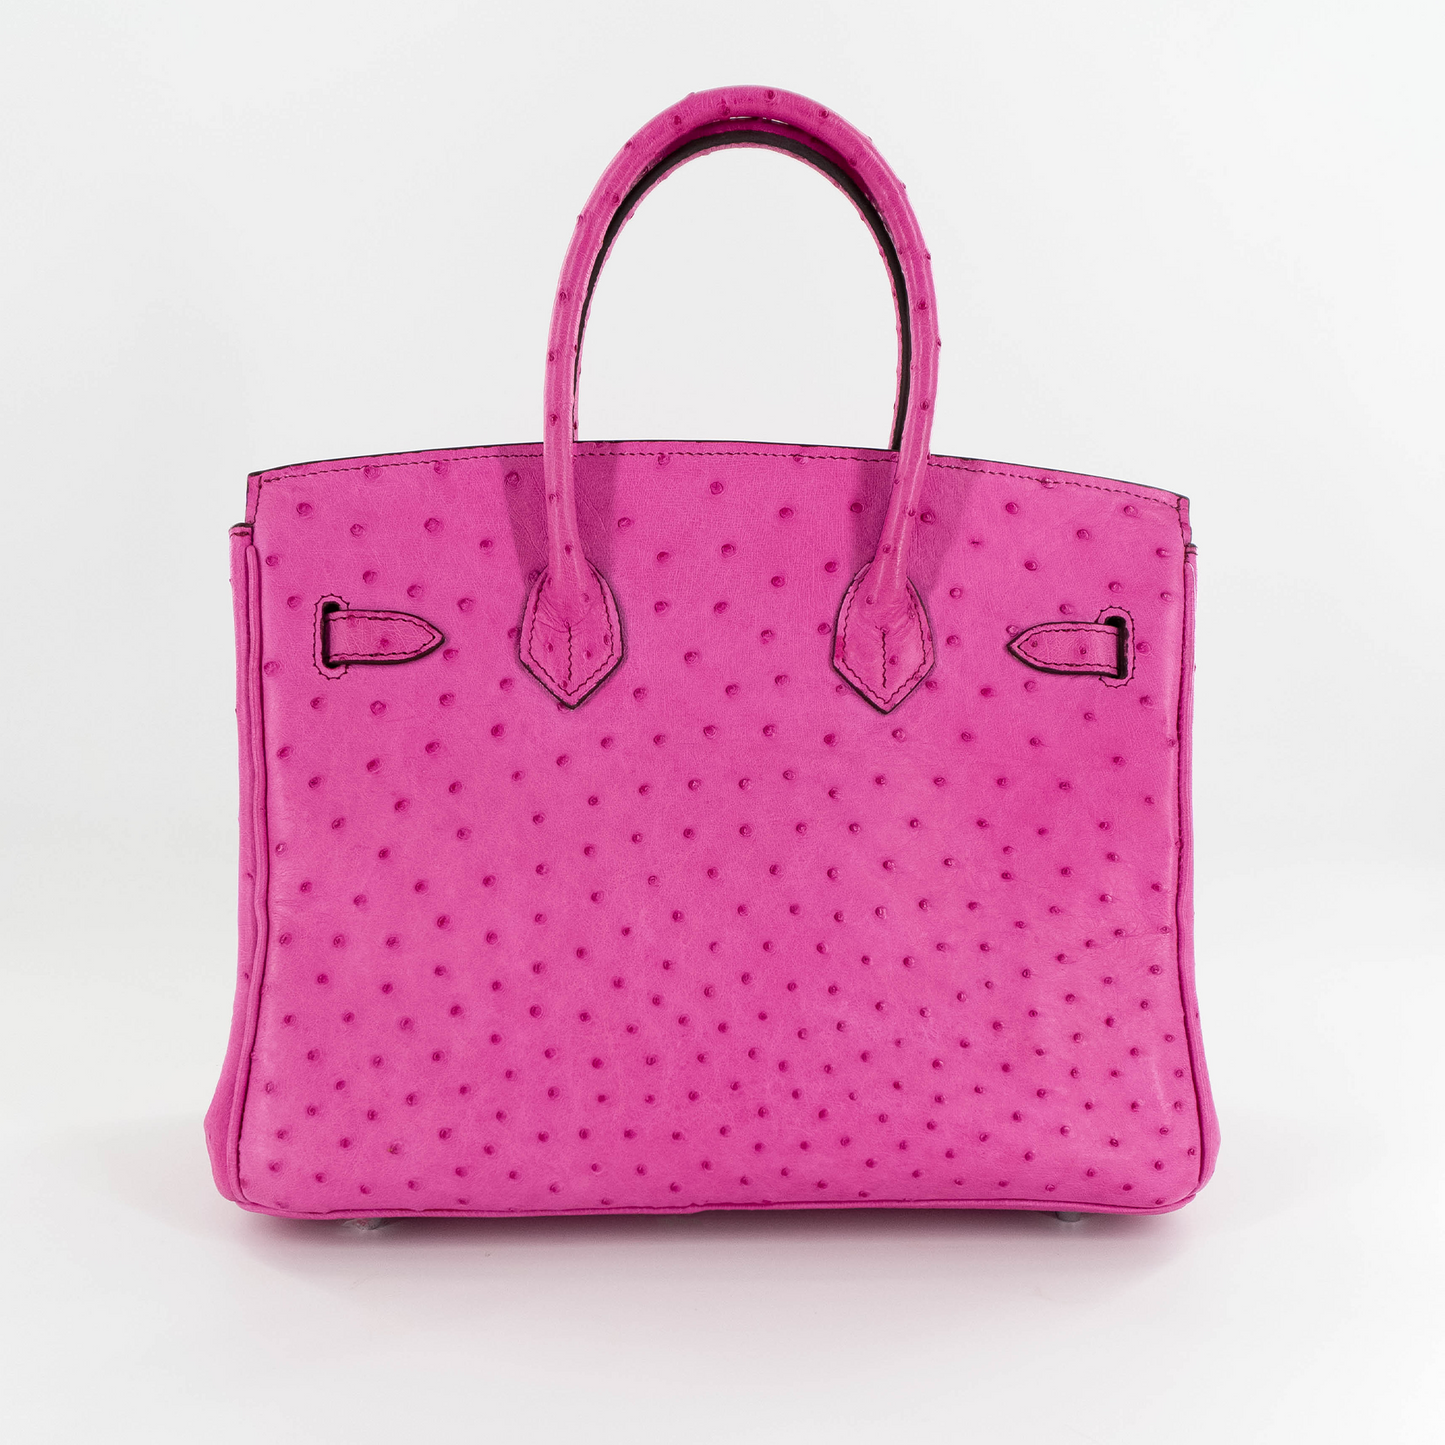 Duchess Handbag in Pink Ostrich Skin